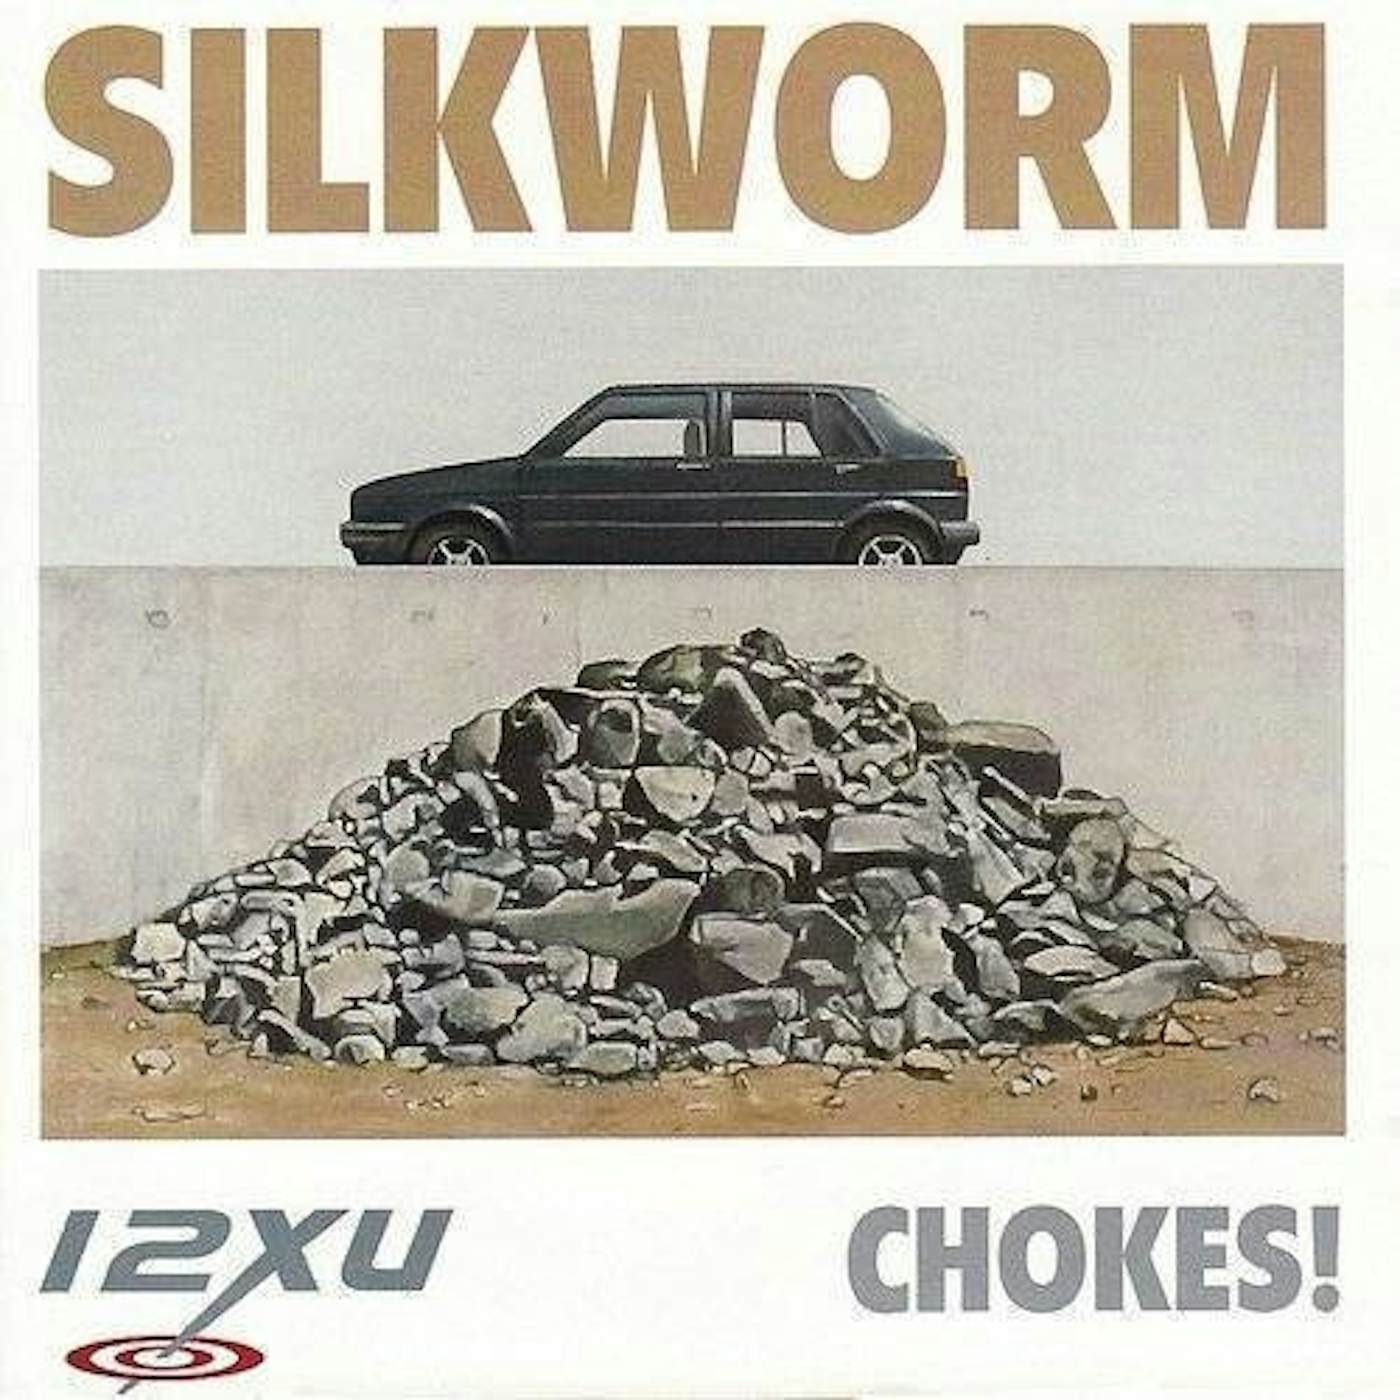 Silkworm Chokes! Vinyl Record